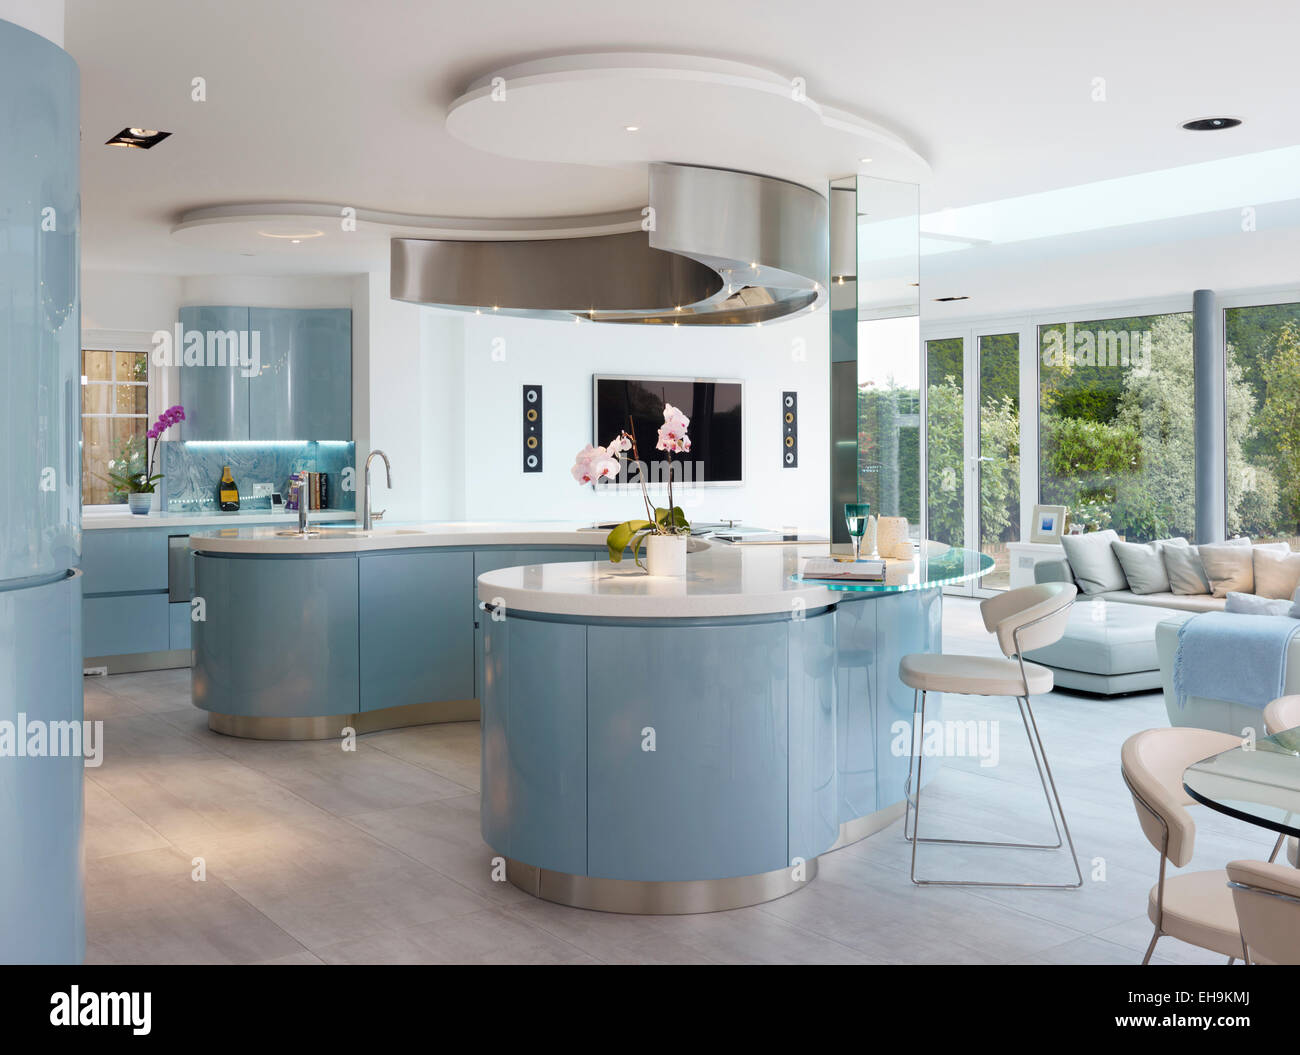 Blaue und weiße gekrümmte Frühstück Bar/Insel in modernen Küche des Wohnhauses, The Drive, UK Stockfoto